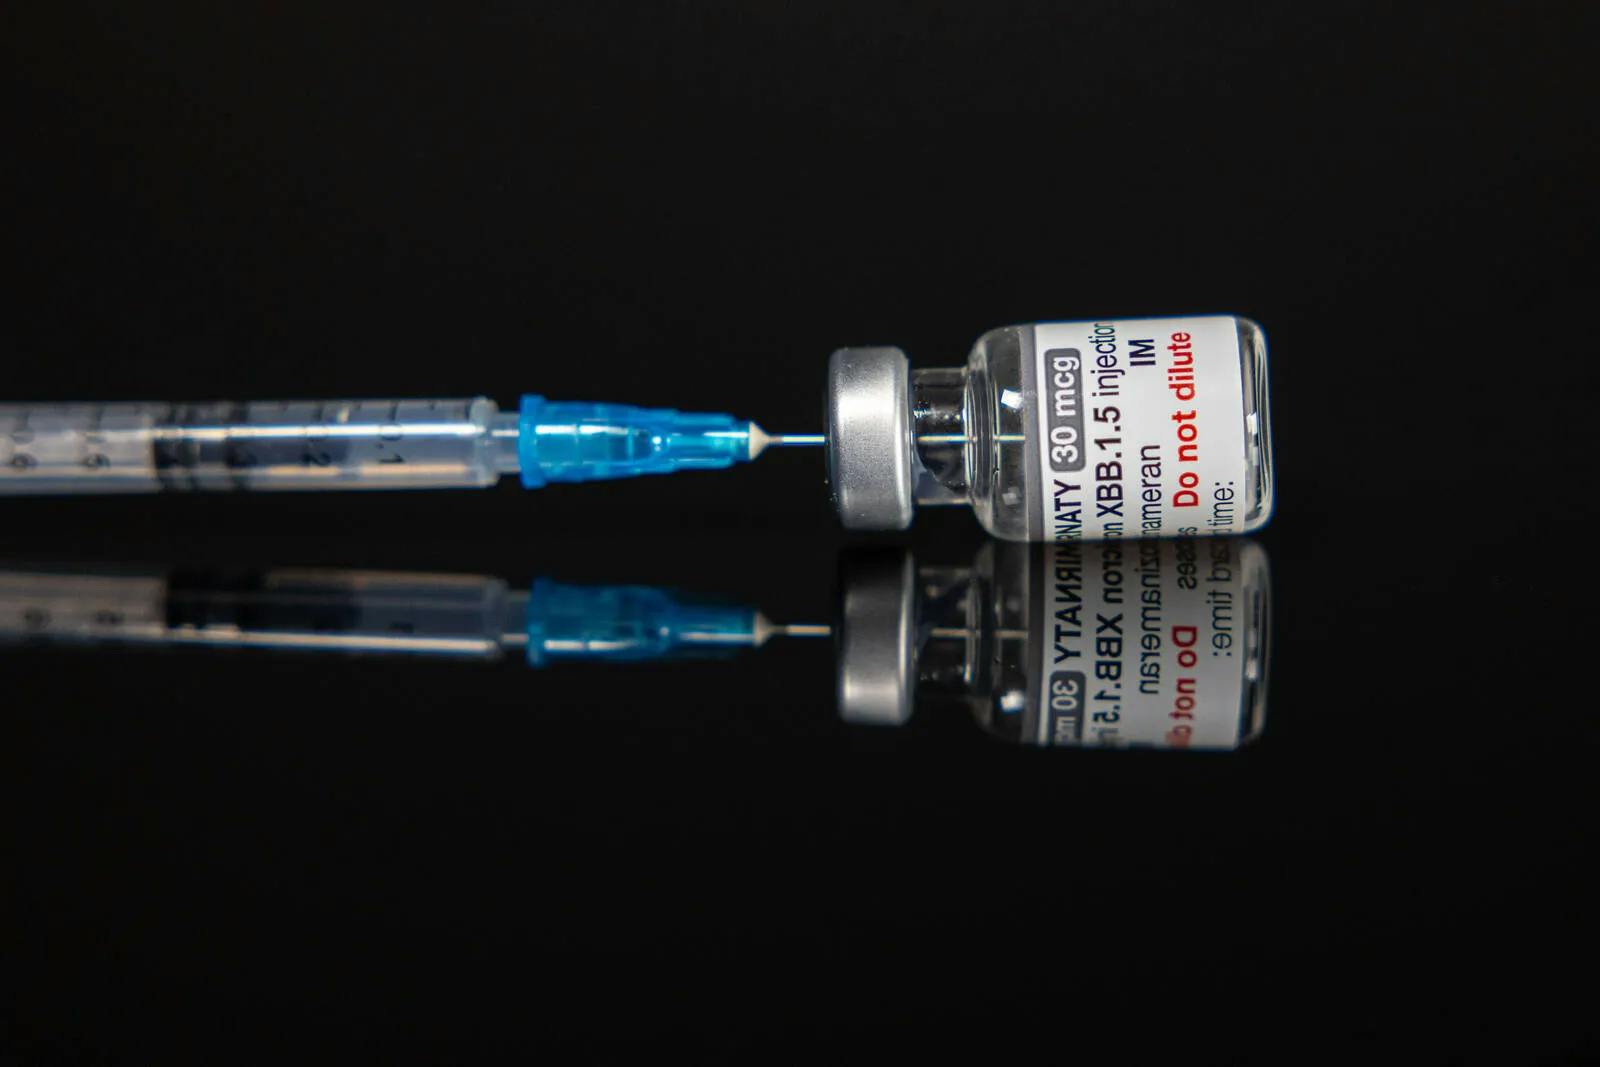 Magdeburger Labor findet Fremd-DNA in Impfstoff